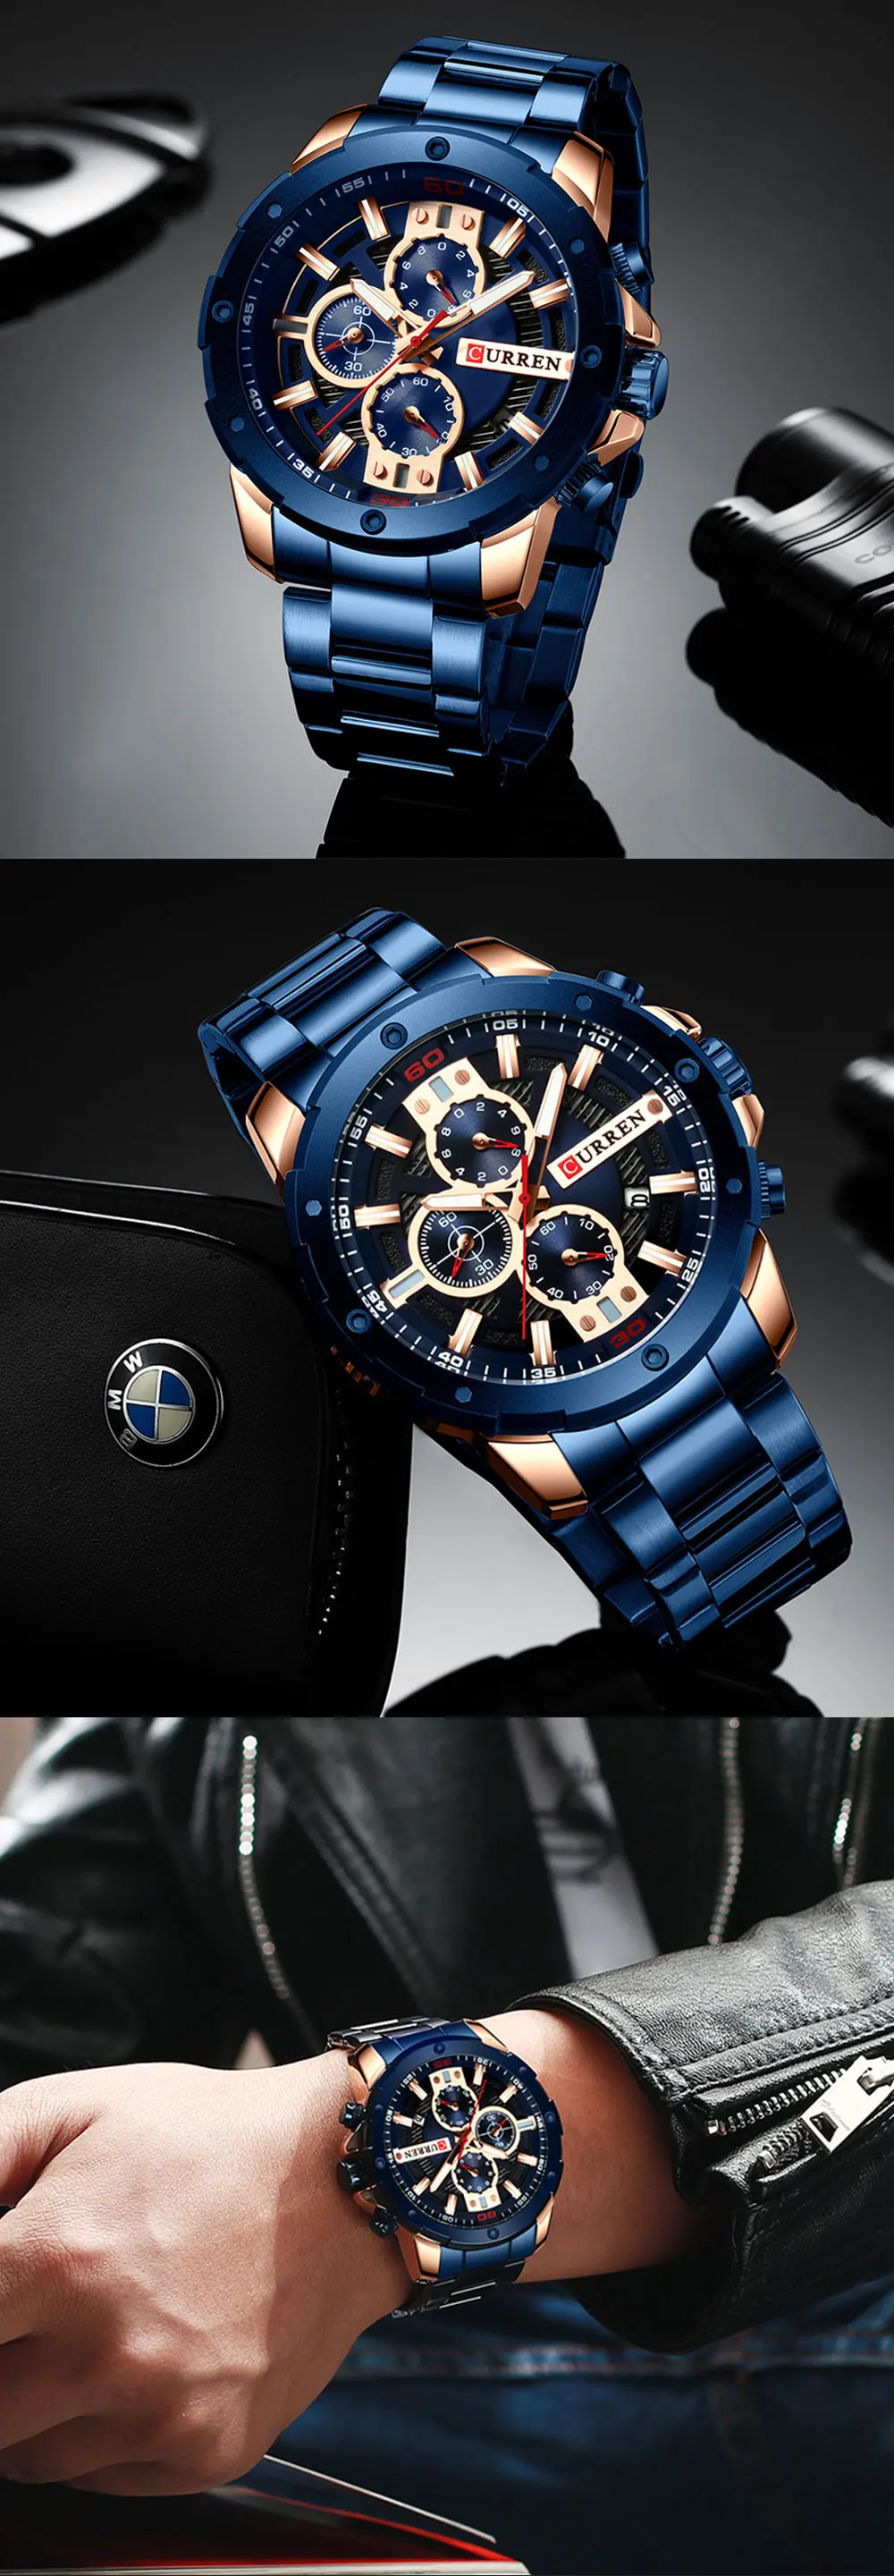 Relogio Masculino мужские наручные часы Curren Топ люксовый бренд часы мужские s кварцевые часы из нержавеющей стали модные хронограф часы мужские